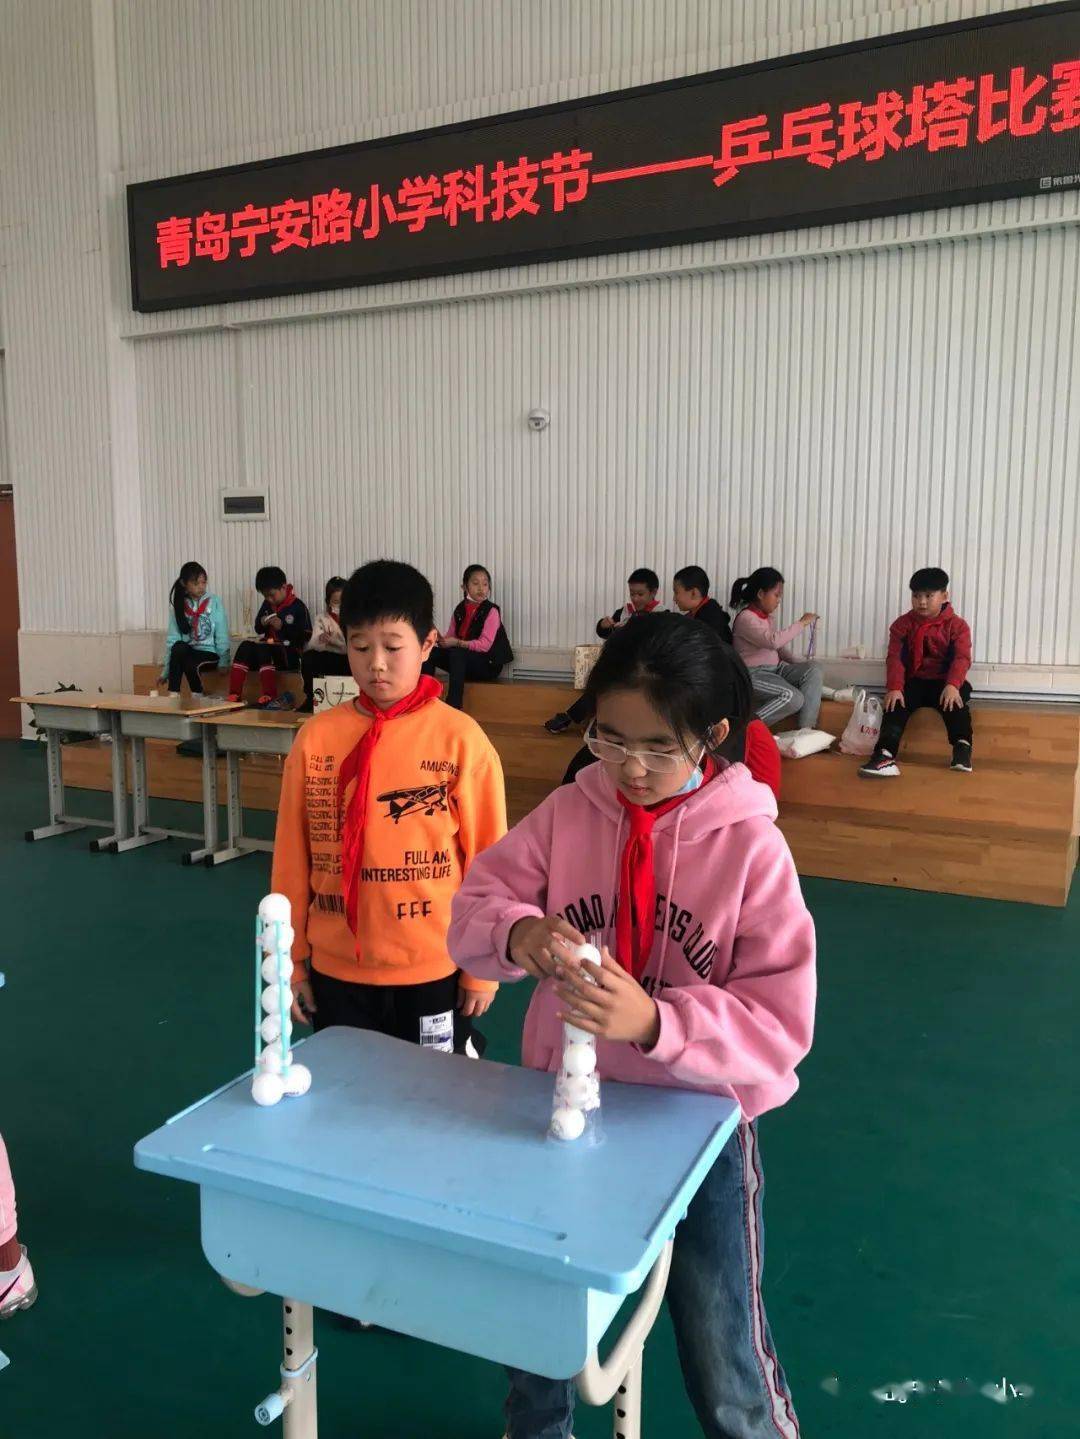 科技创新思维 球塔提升高度 ——青岛宁安路小学2020科技节乒乓球塔